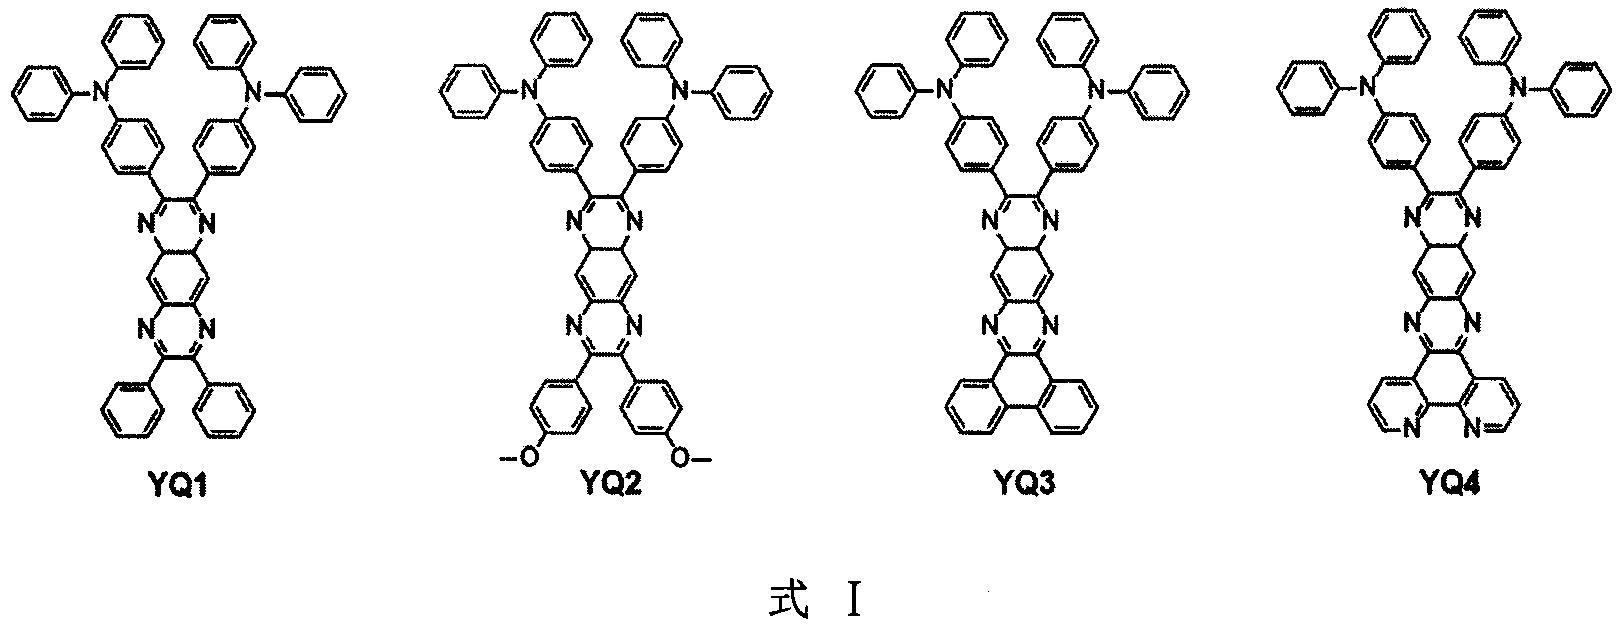 一类Y型共轭单体的制备、电化学聚合及其应用